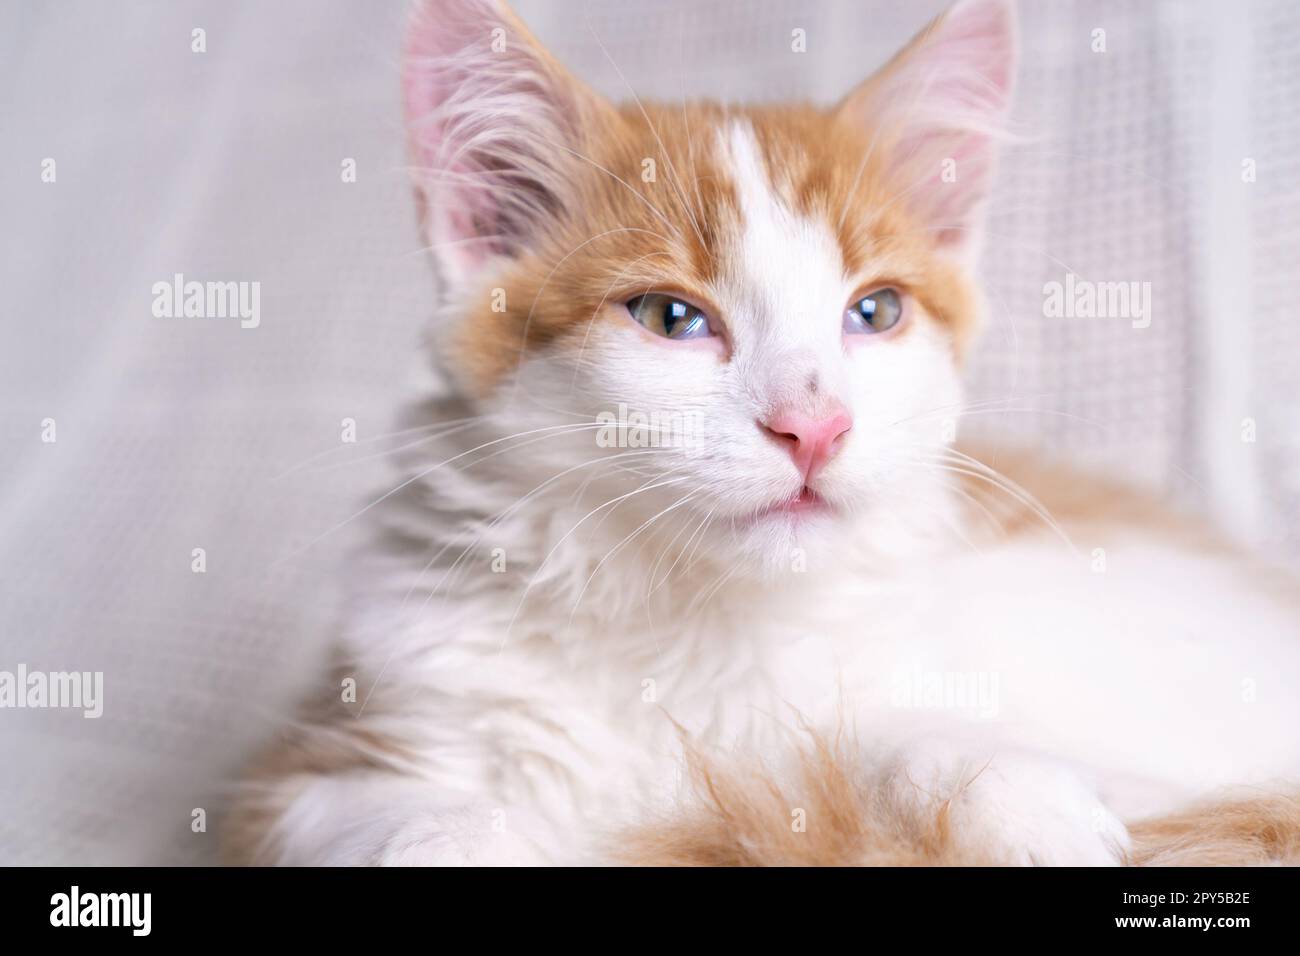 Portrait de magnifique orange gingembre doux cheveux longs mongrel chat chatte chatte allongé sur le coton blanc à la maison. Banque D'Images